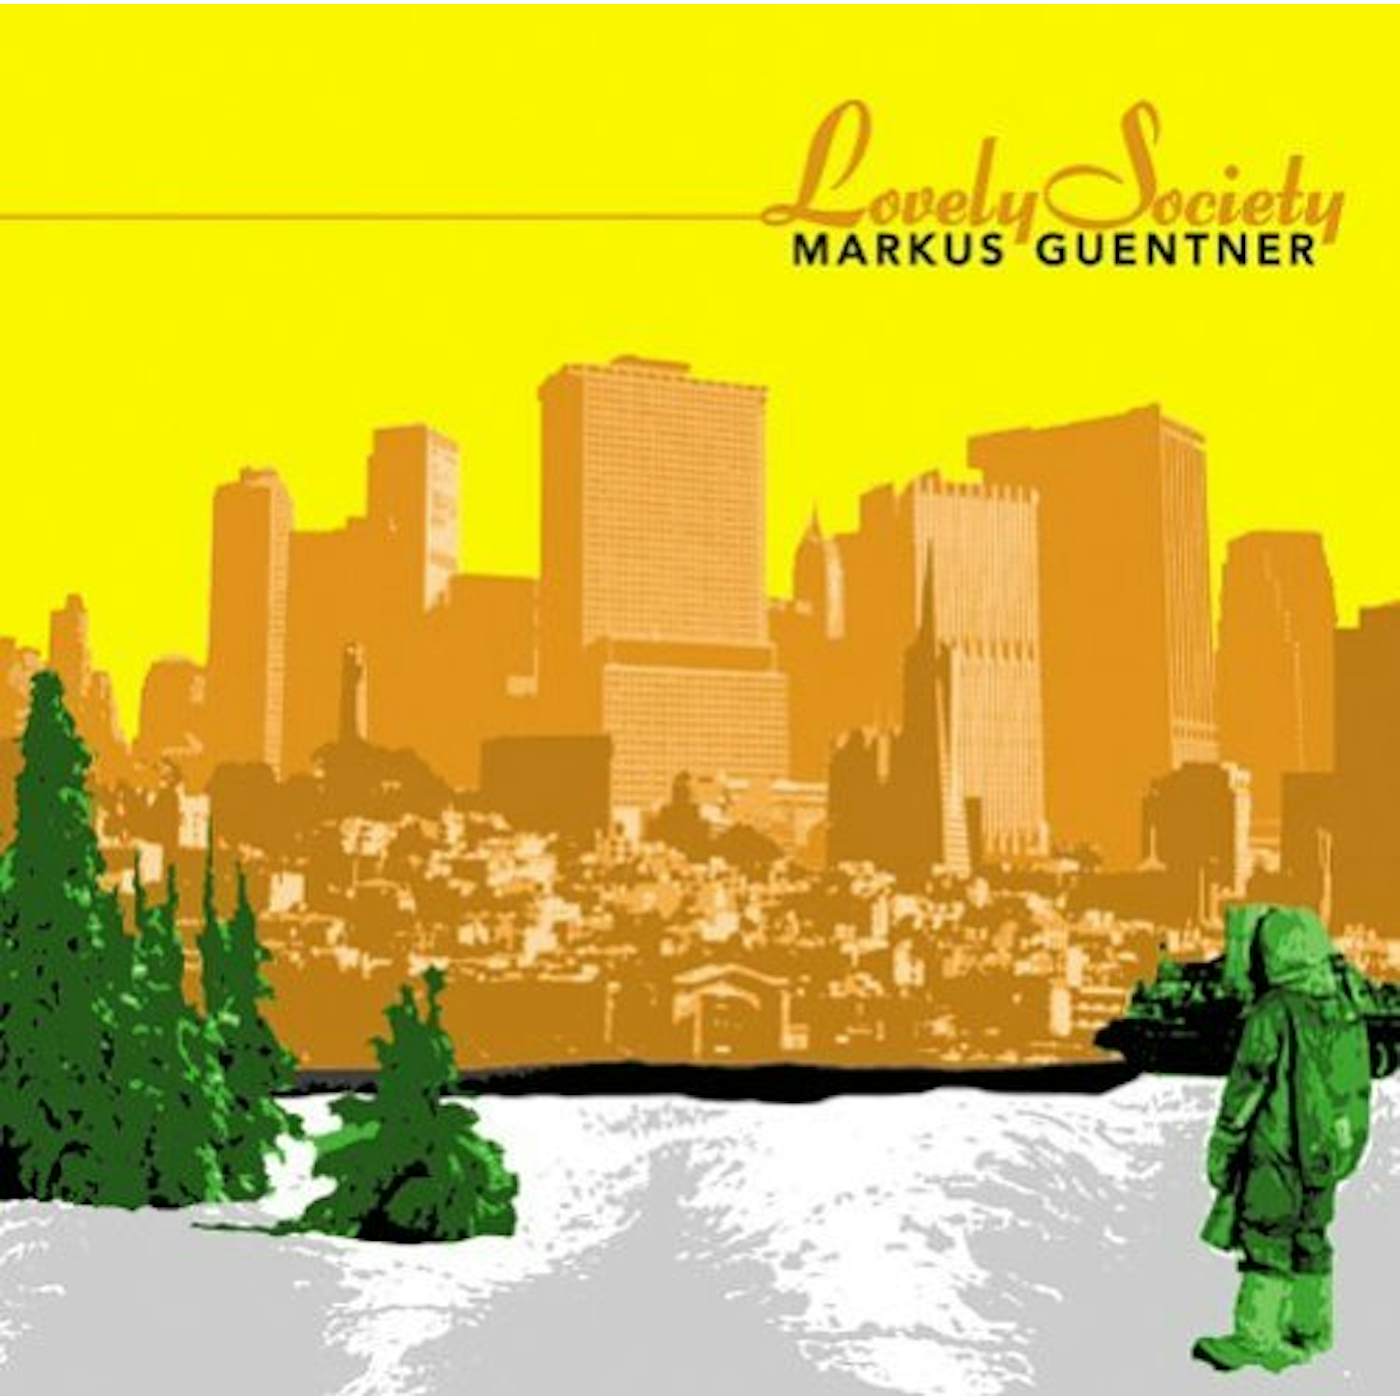 Markus Guentner LOVELY SOCIETY CD